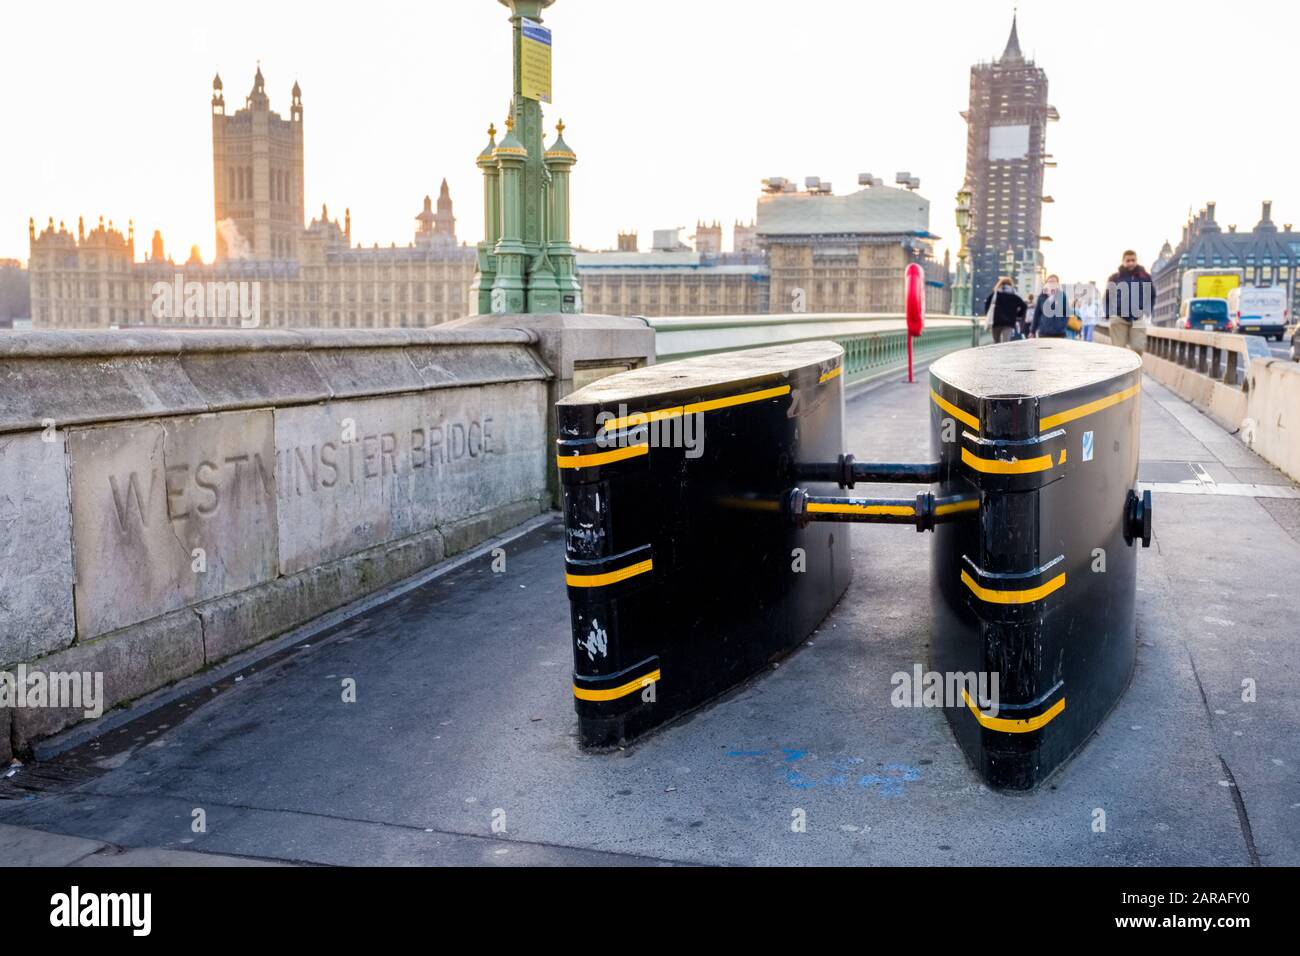 Terrorismusbekämpfung: Hindernisse auf dem Straßenbelag am Ende der Westminster Bridge, London, Großbritannien Stockfoto